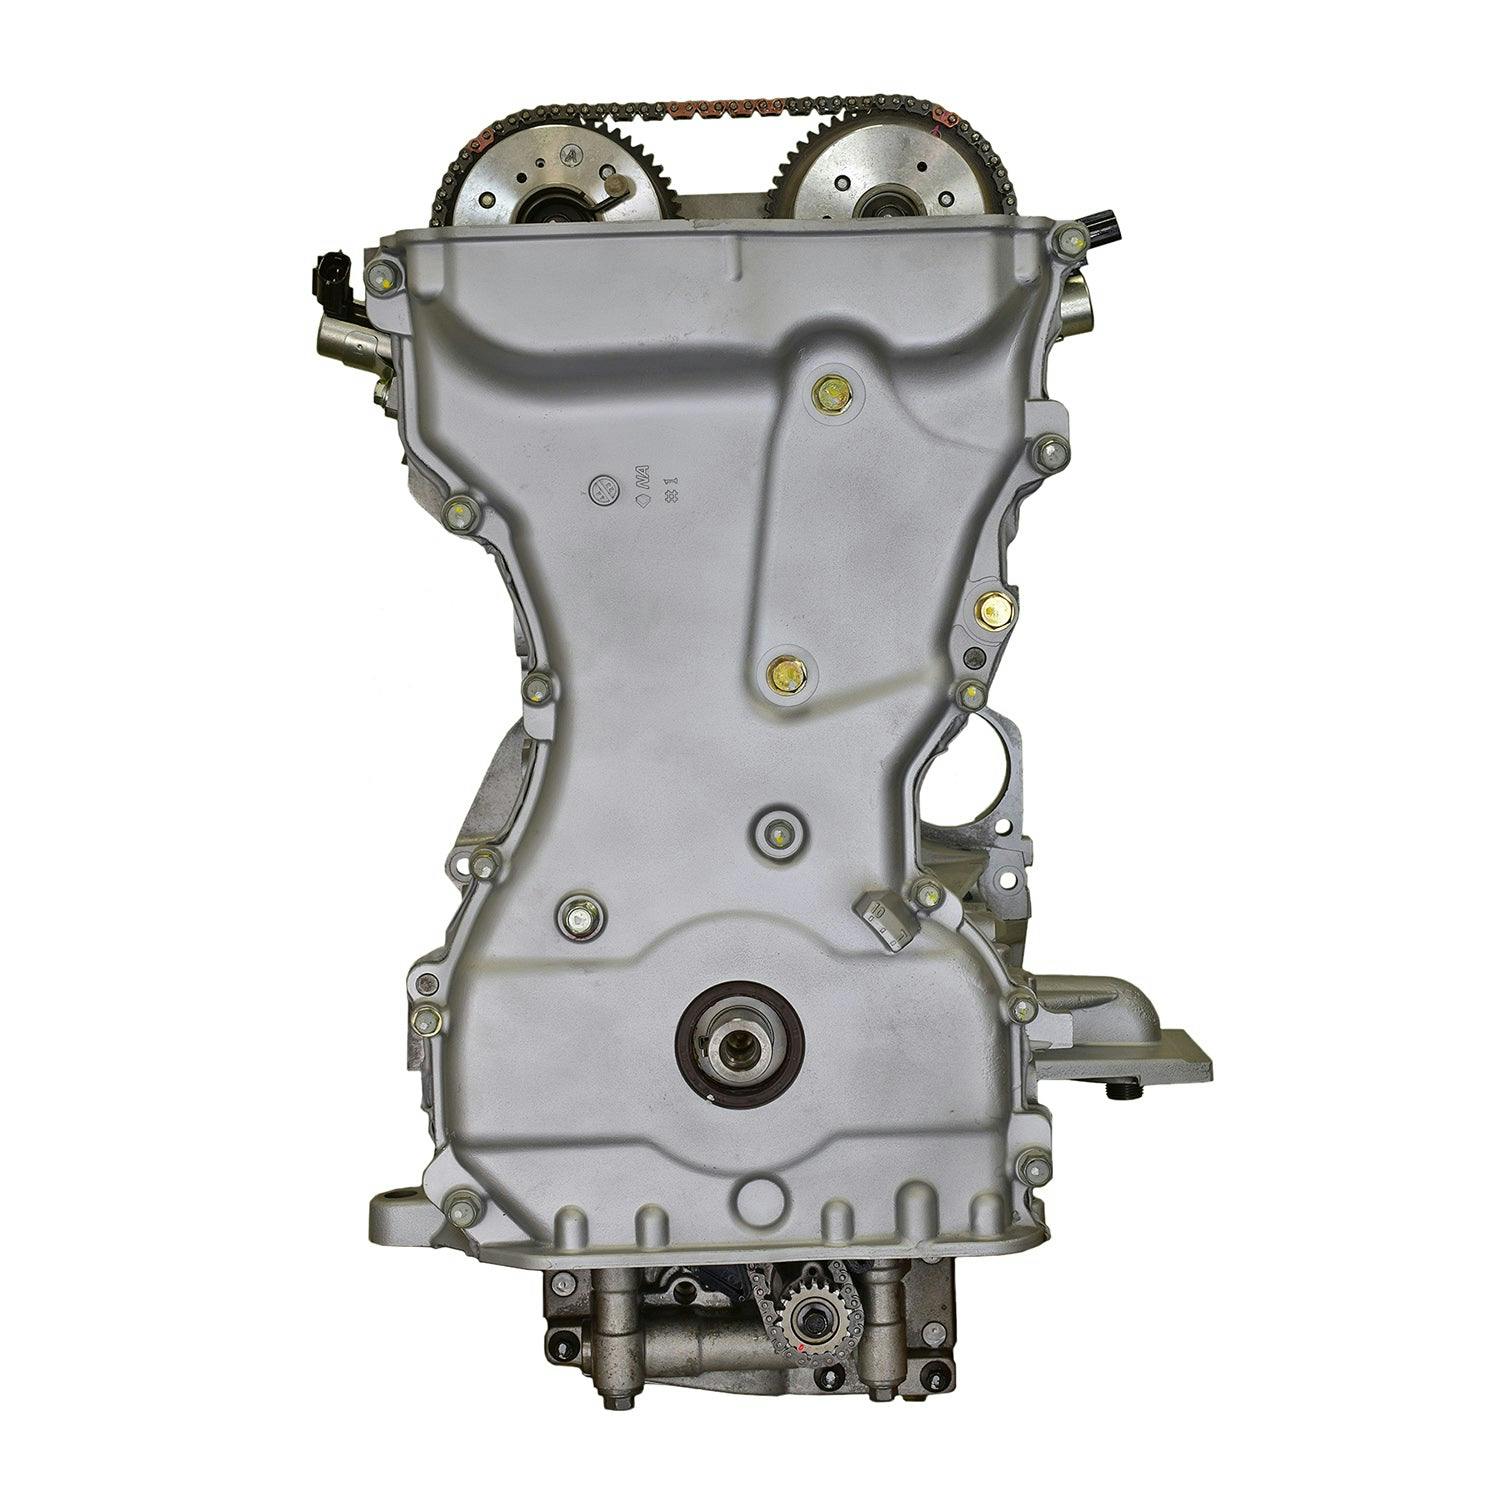 2.4L Inline-4 Engine for 2008-2015 Mitsubishi Lancer/Outlander